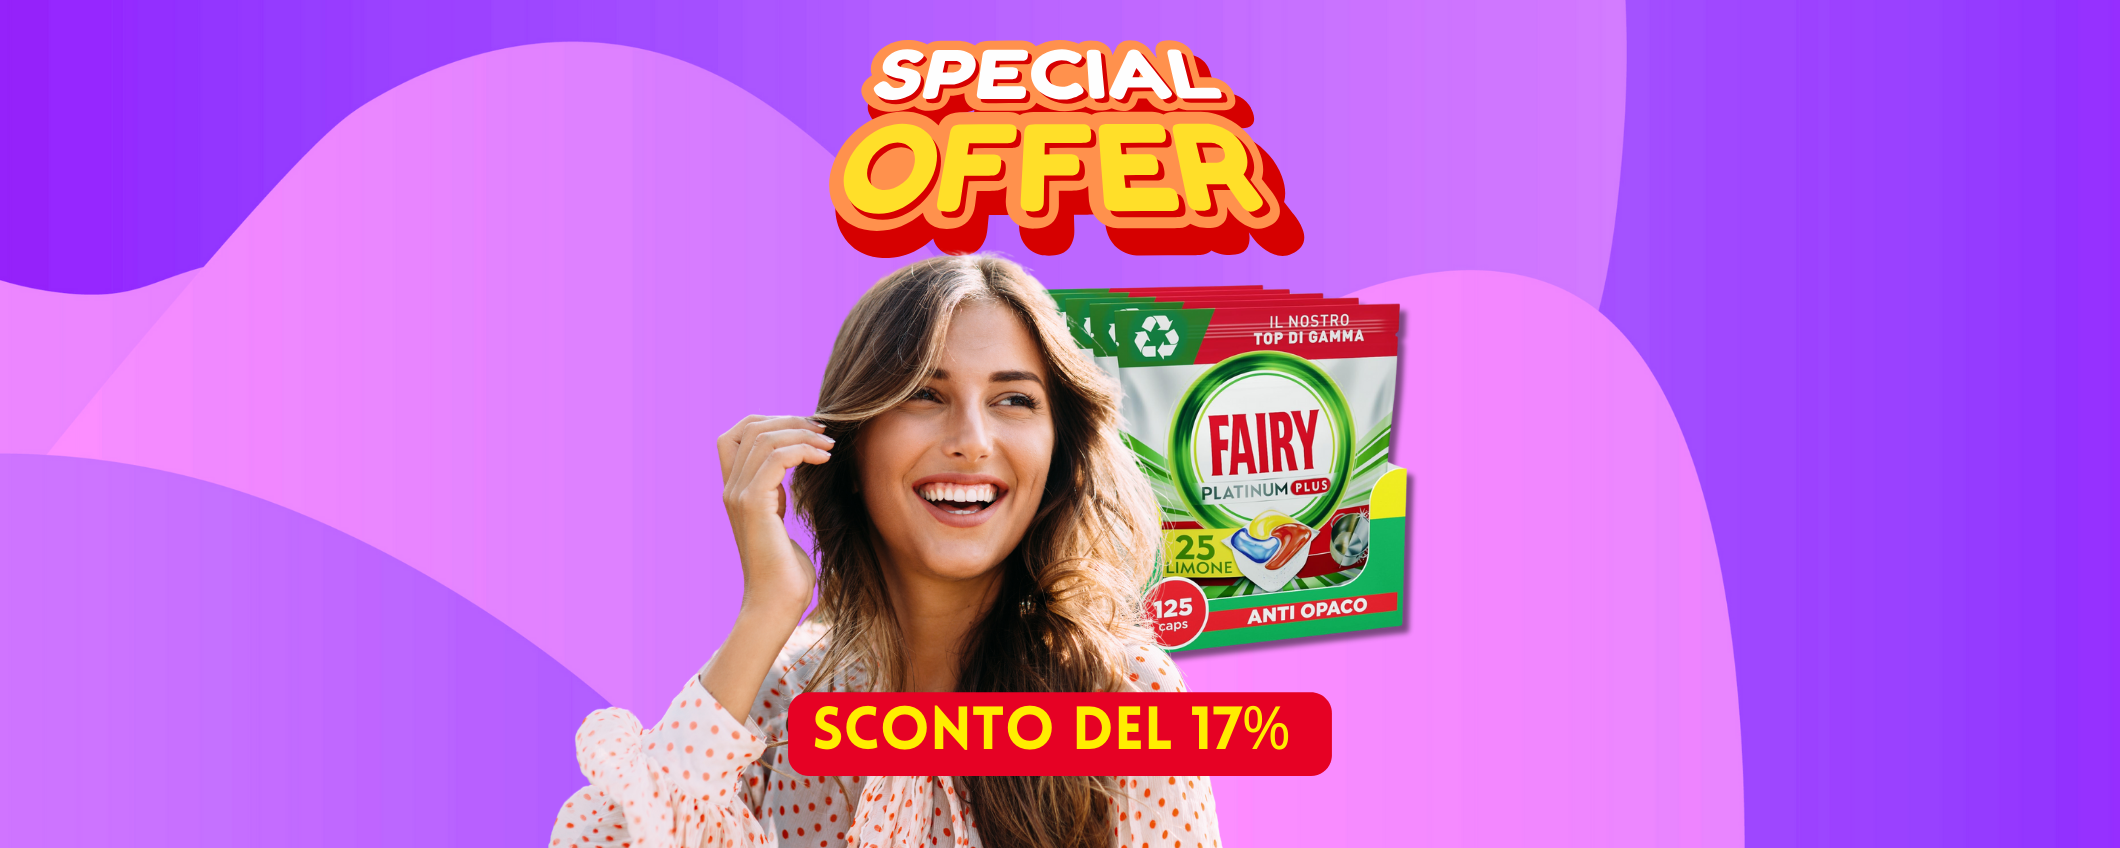 Piatti perfetti con Fairy Platinum in sconto del 17% su Amazon!